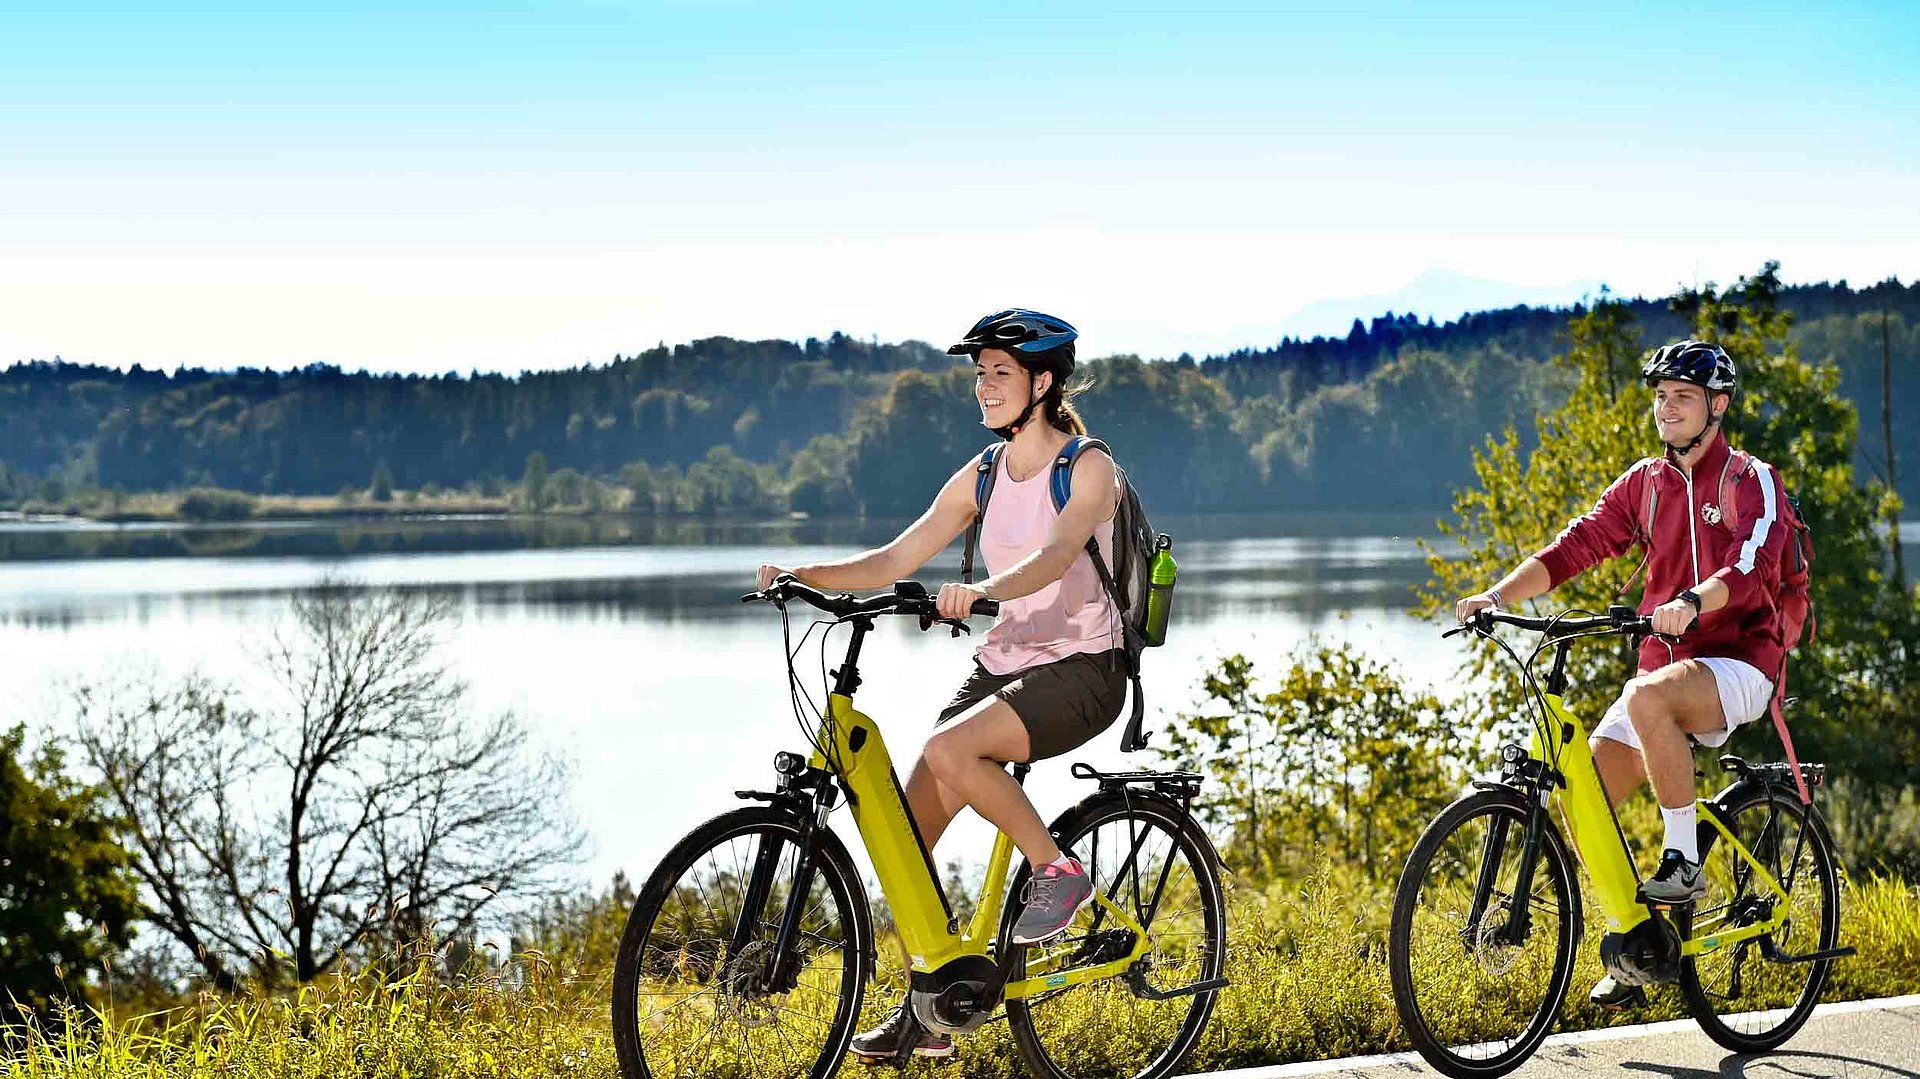 Aktivurlaub mit dem Rad im Fränkischen Seenland - zwei Radfahrer mit E-Bike fahren auf Radweg bei sonnigem Wetter an einem See vorbei; Waldlandschaft im Hintergrund